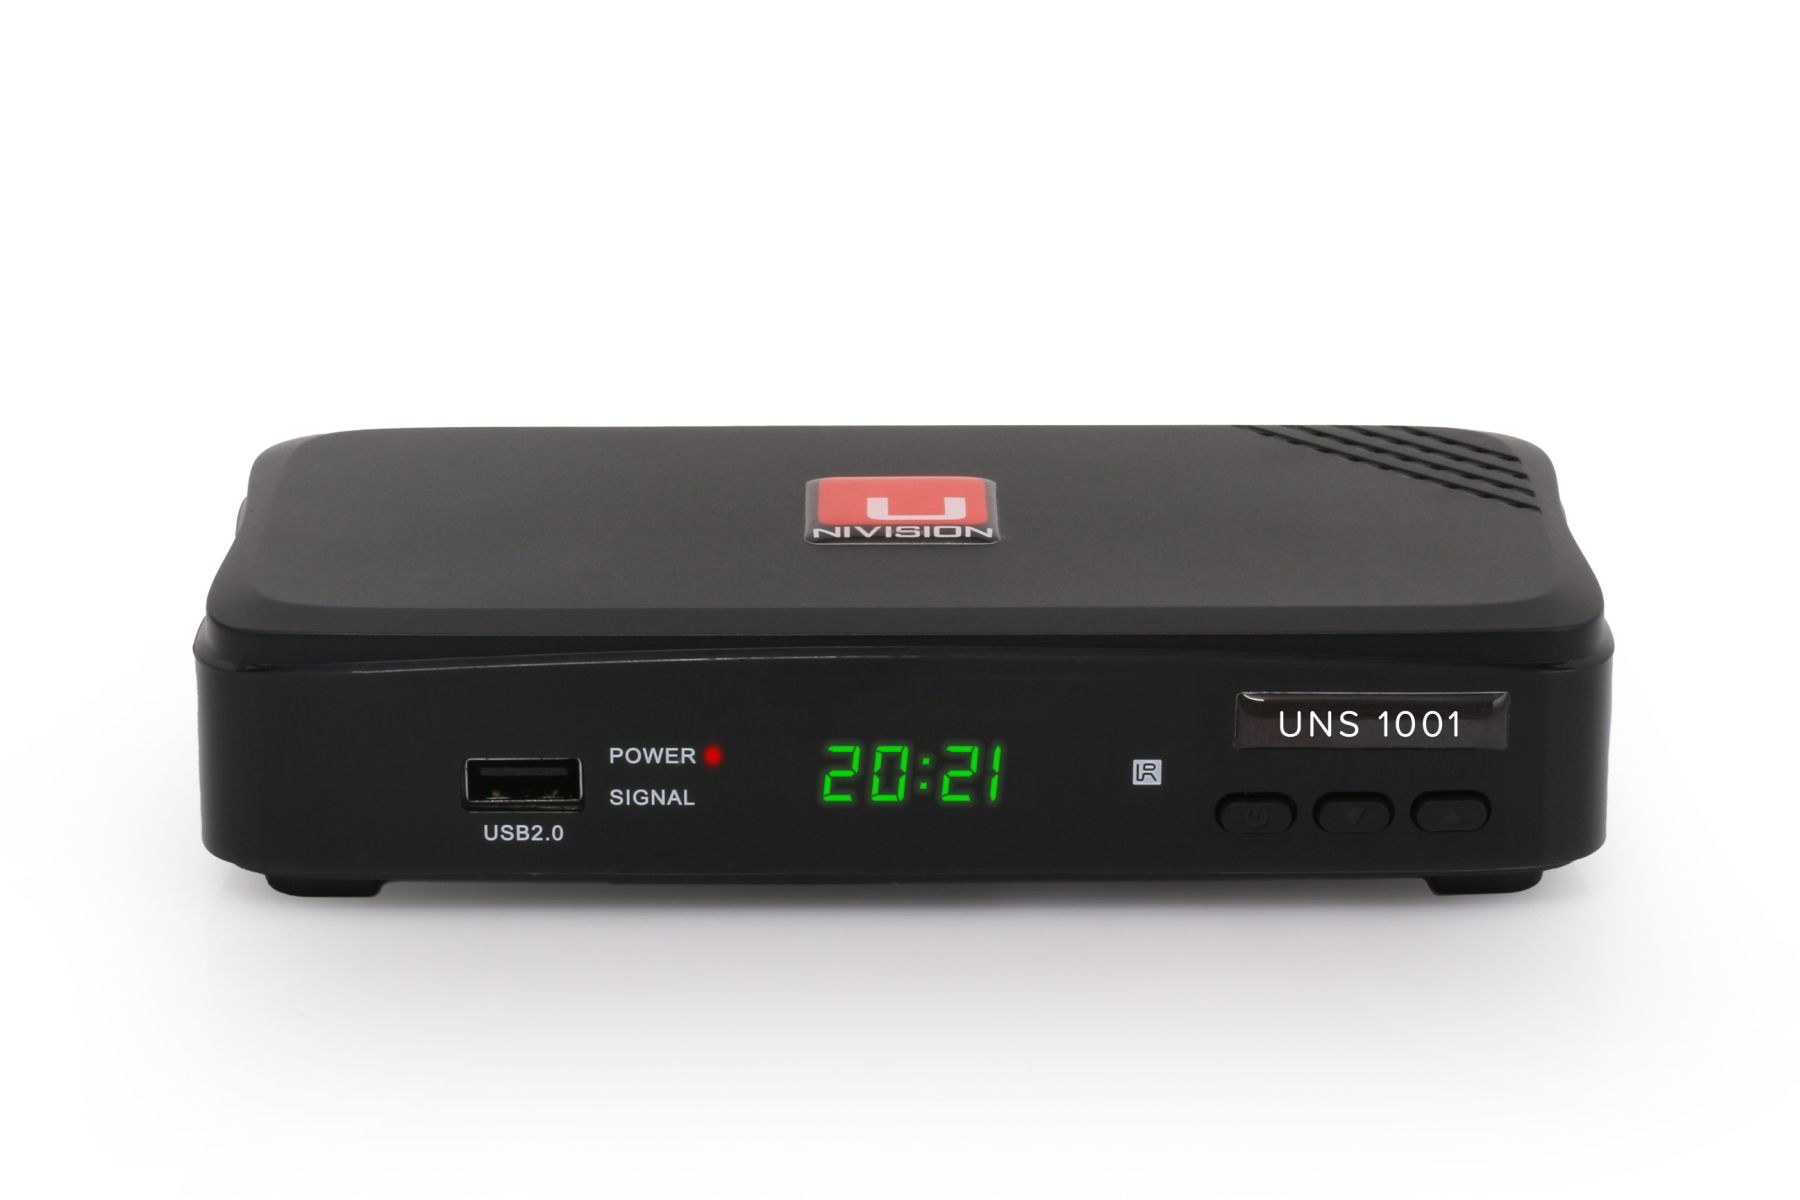 schwarz) UNS1001PVR Satellitenempfang UNIVISION Satreceiver für (HDTV, FullHD PVR-Funktion, DVB-S, DVB-S2,